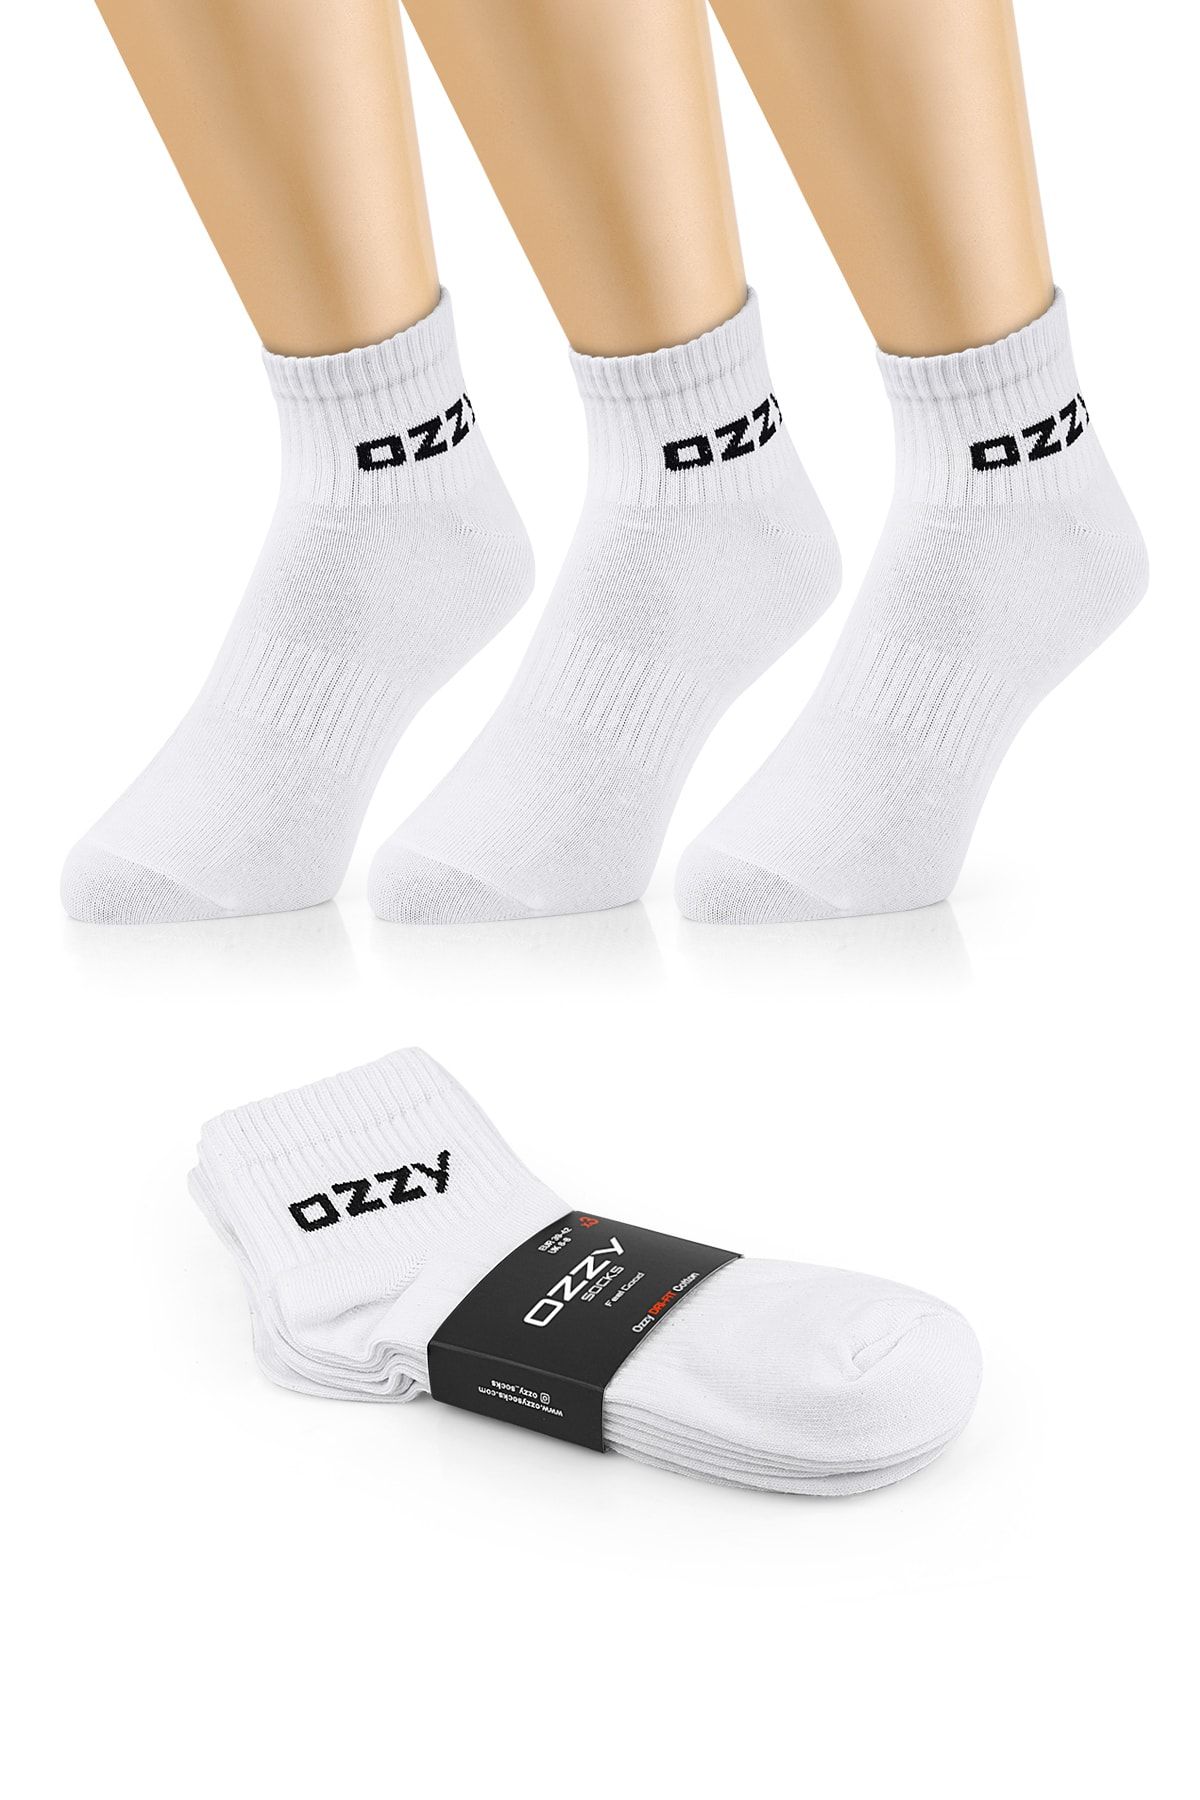 Ozzy Socks 3 Çift Kısa Konçlu Tenis Spor Çorabı Beyaz Paket